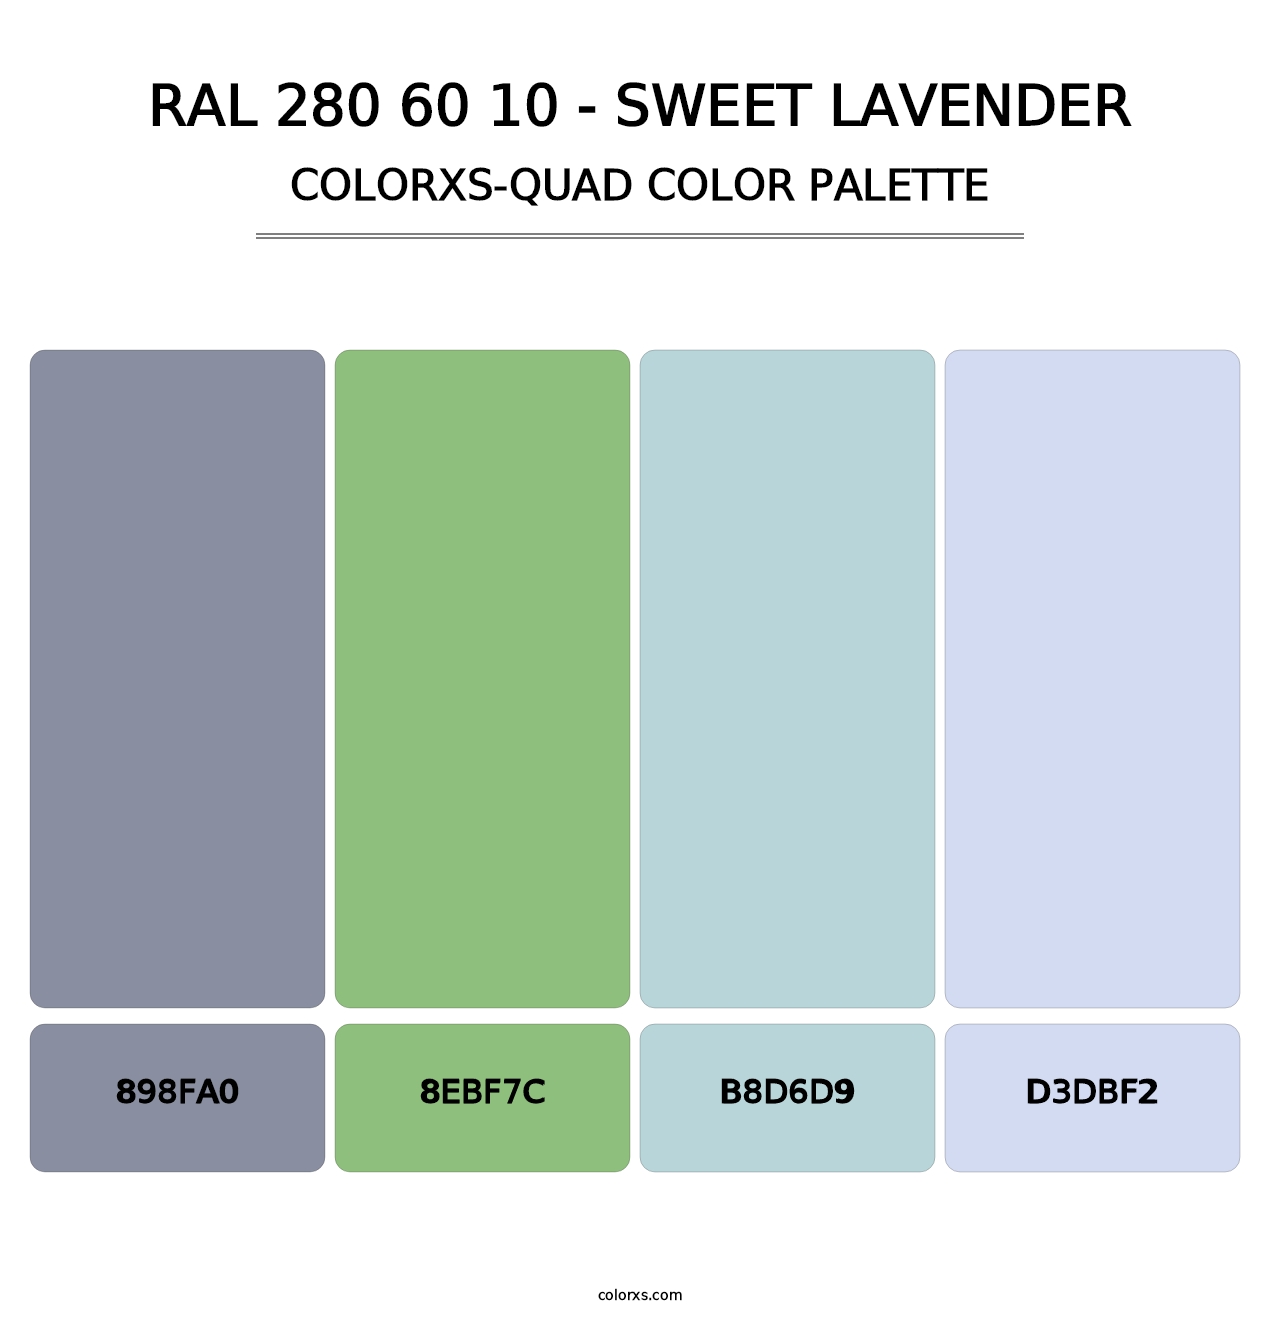 RAL 280 60 10 - Sweet Lavender - Colorxs Quad Palette